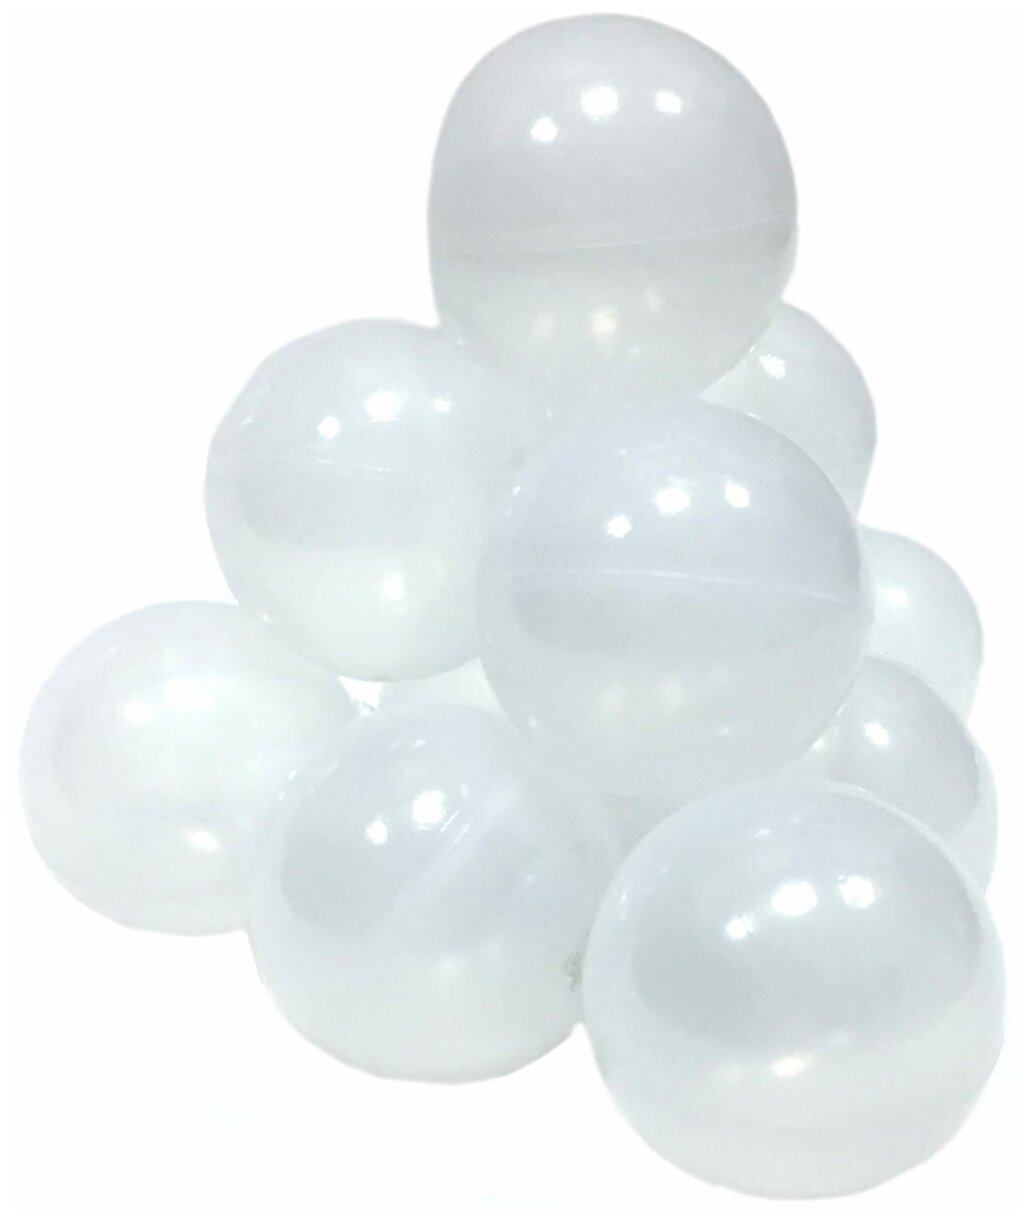 Сухой игровой бассейн “Морская пена” серый выс. 40см. с 200 шарами в комплекте: белый, черный, серый, прозрачный - фотография № 4